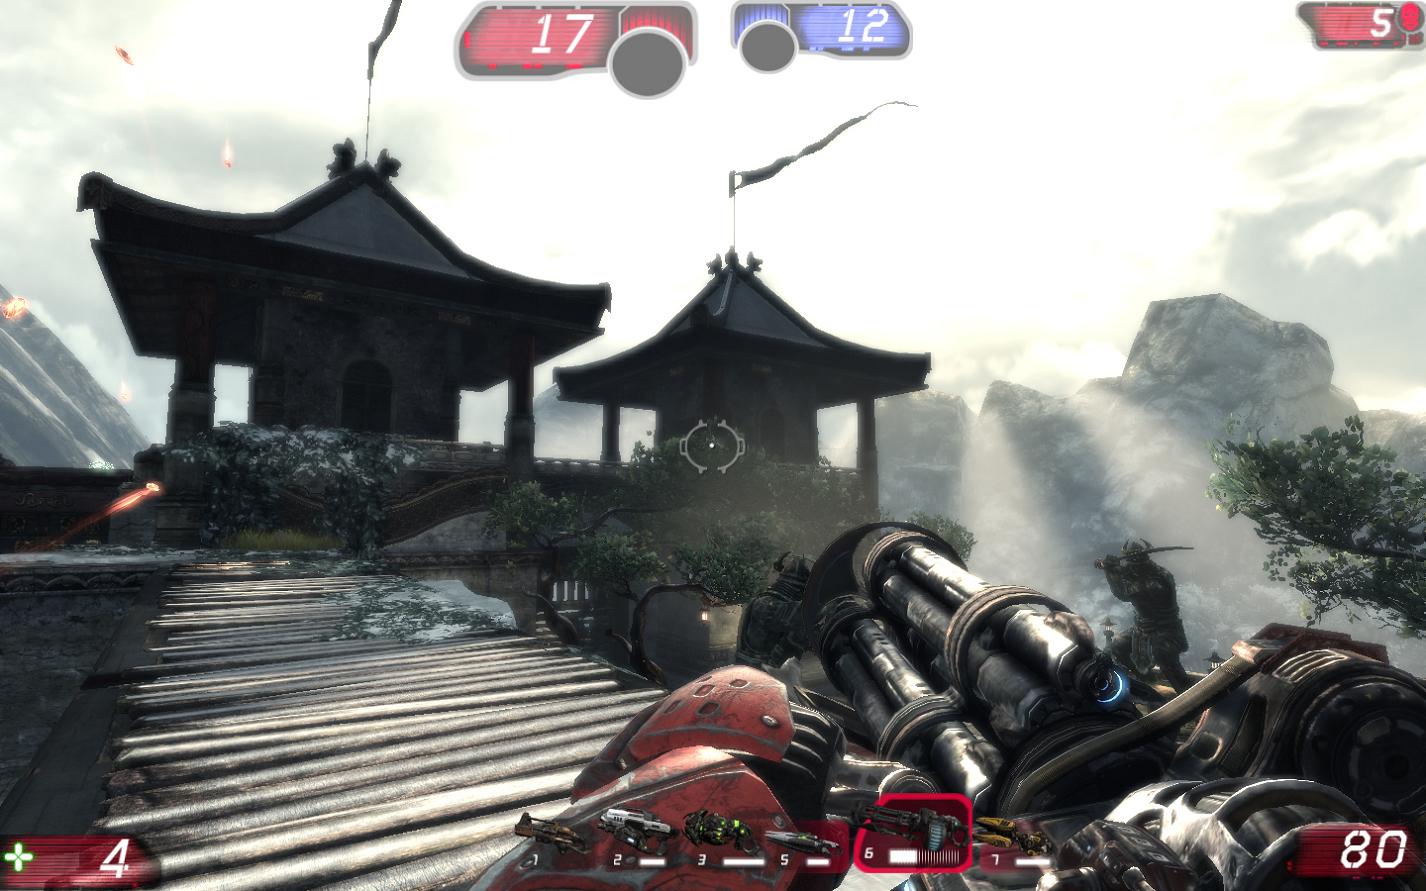 Unreal Tournament 3 screenshot